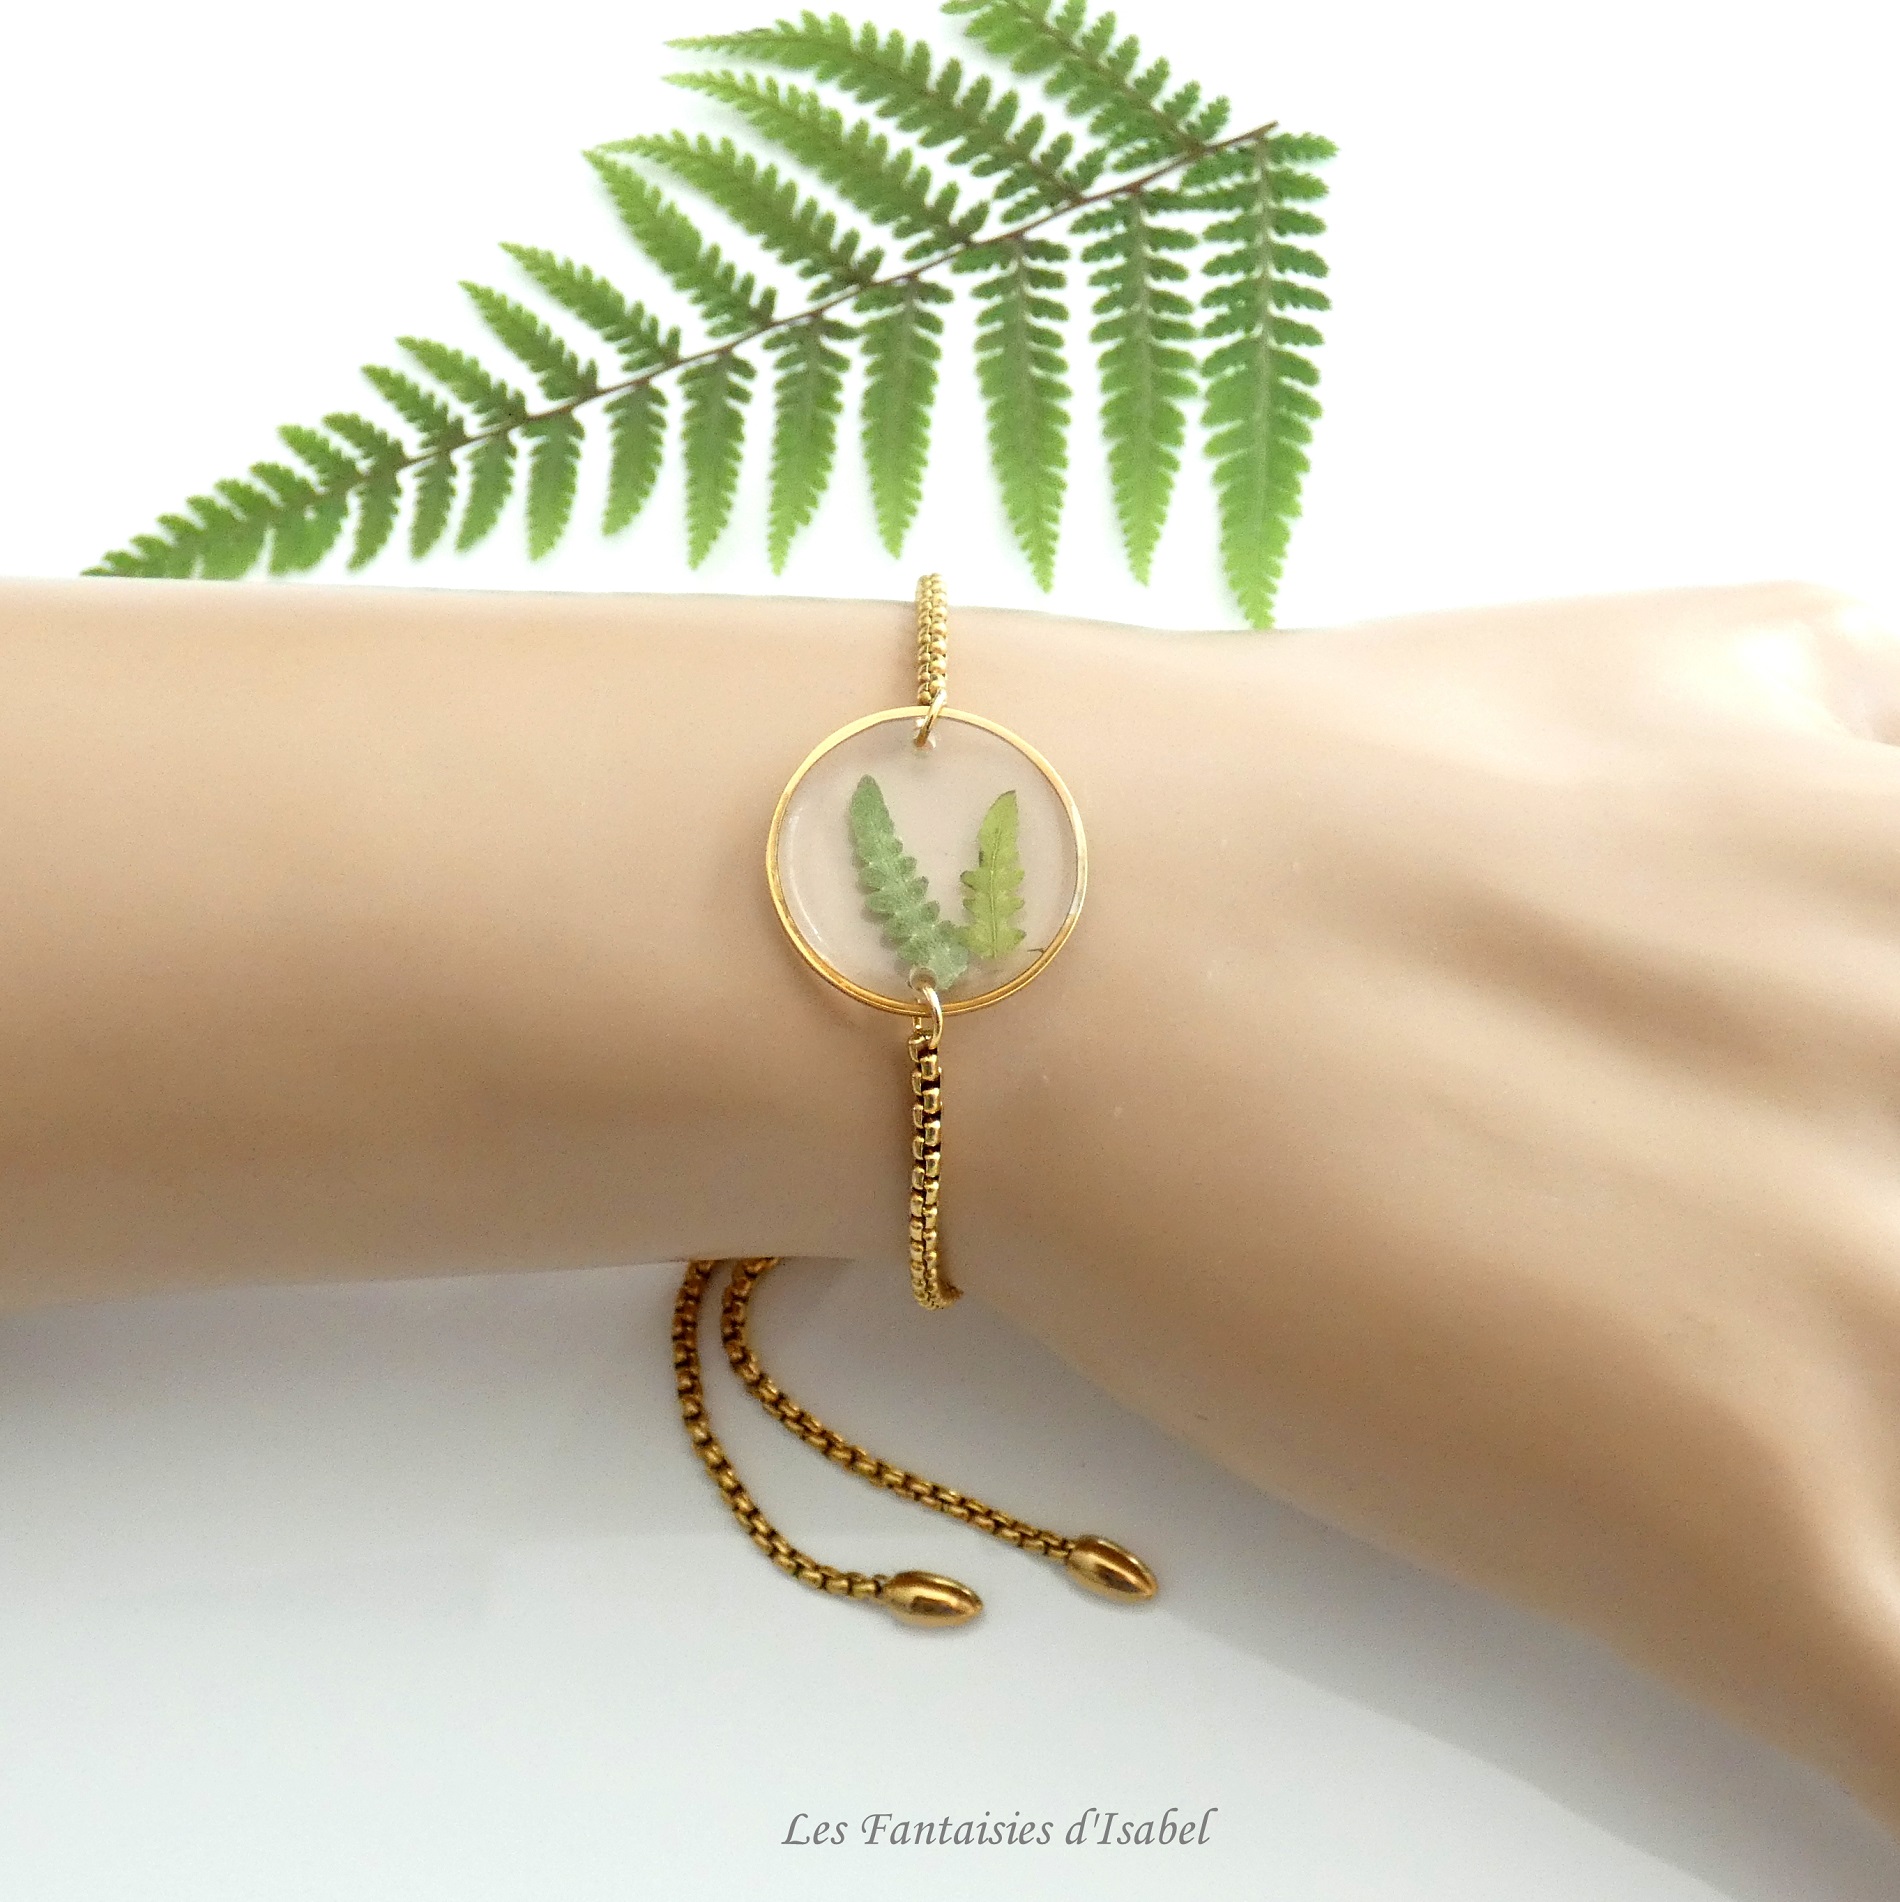 53-bracelet ajustable acier inox fleur fougères or cecle artisanal landes porté